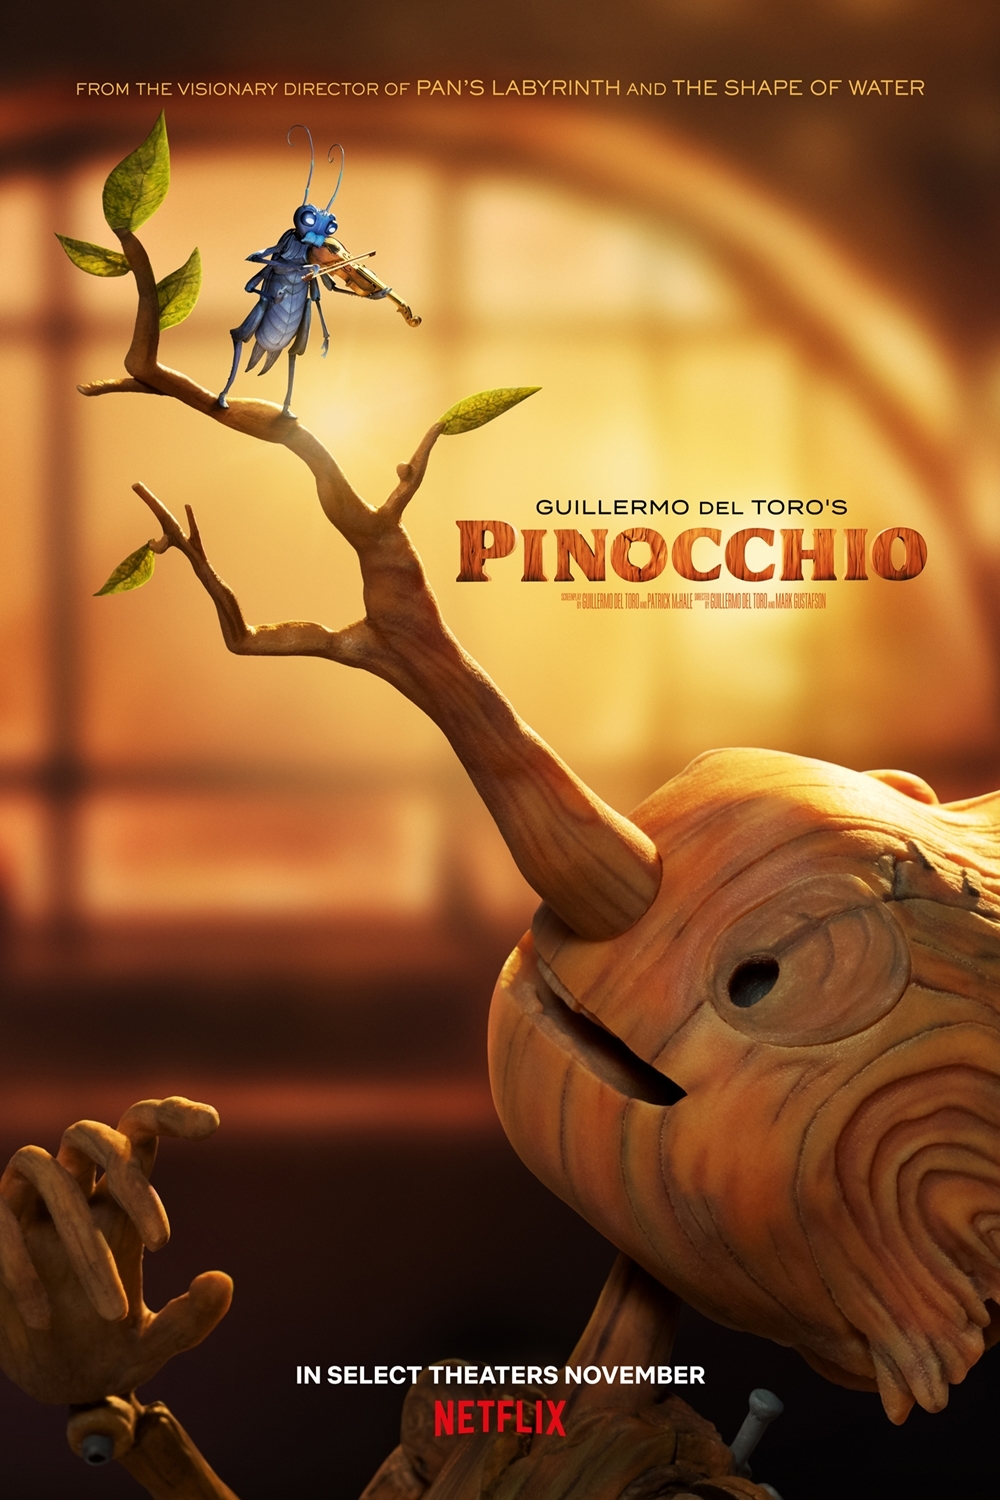 Still of Guillermo del Toro's Pinocchio